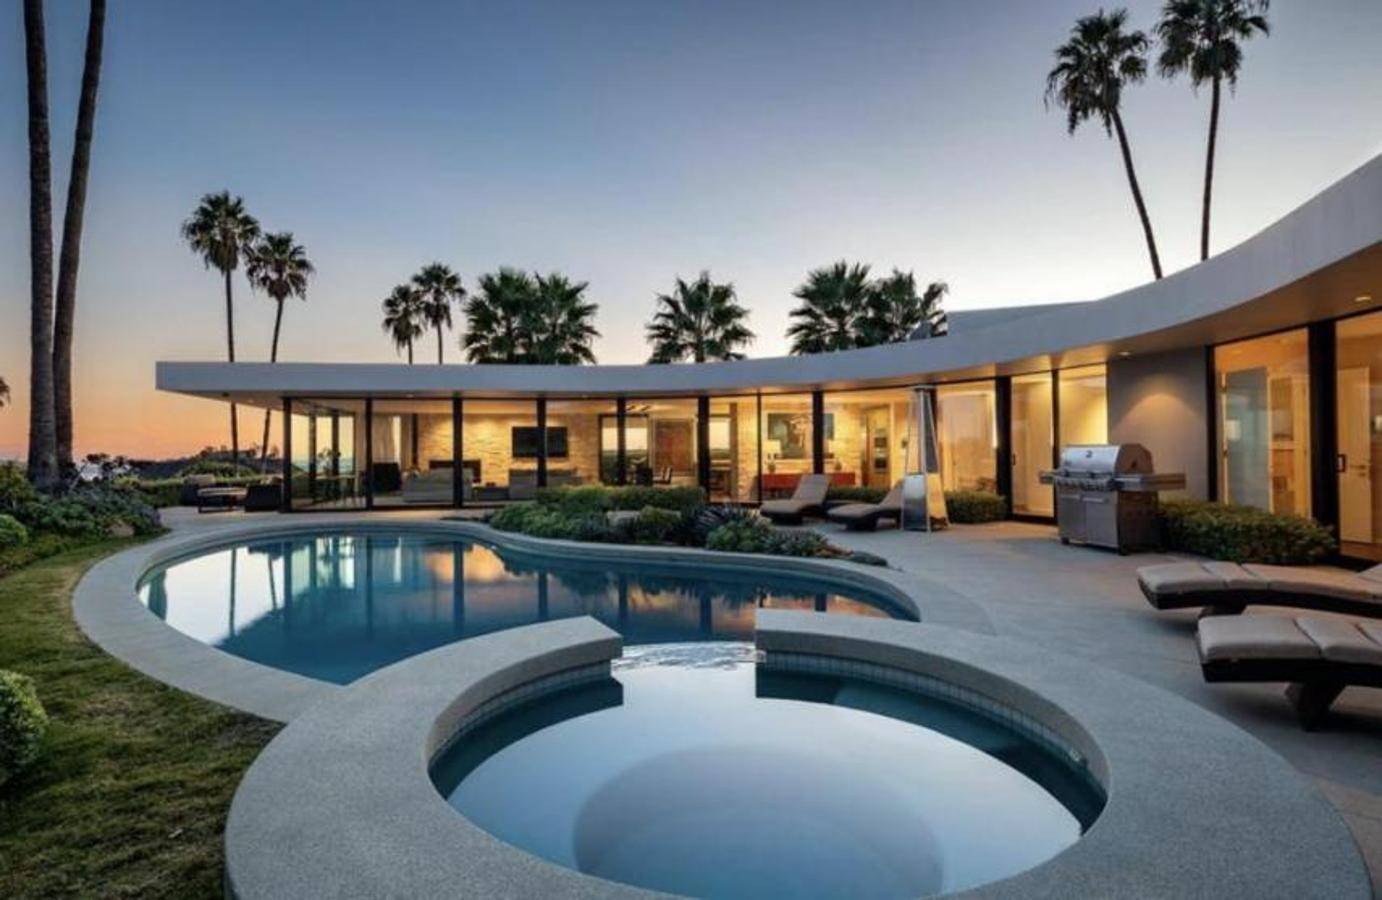 В каком доме живёт миллиардер илон маск: дизайн его дворца в лос-анджелесе